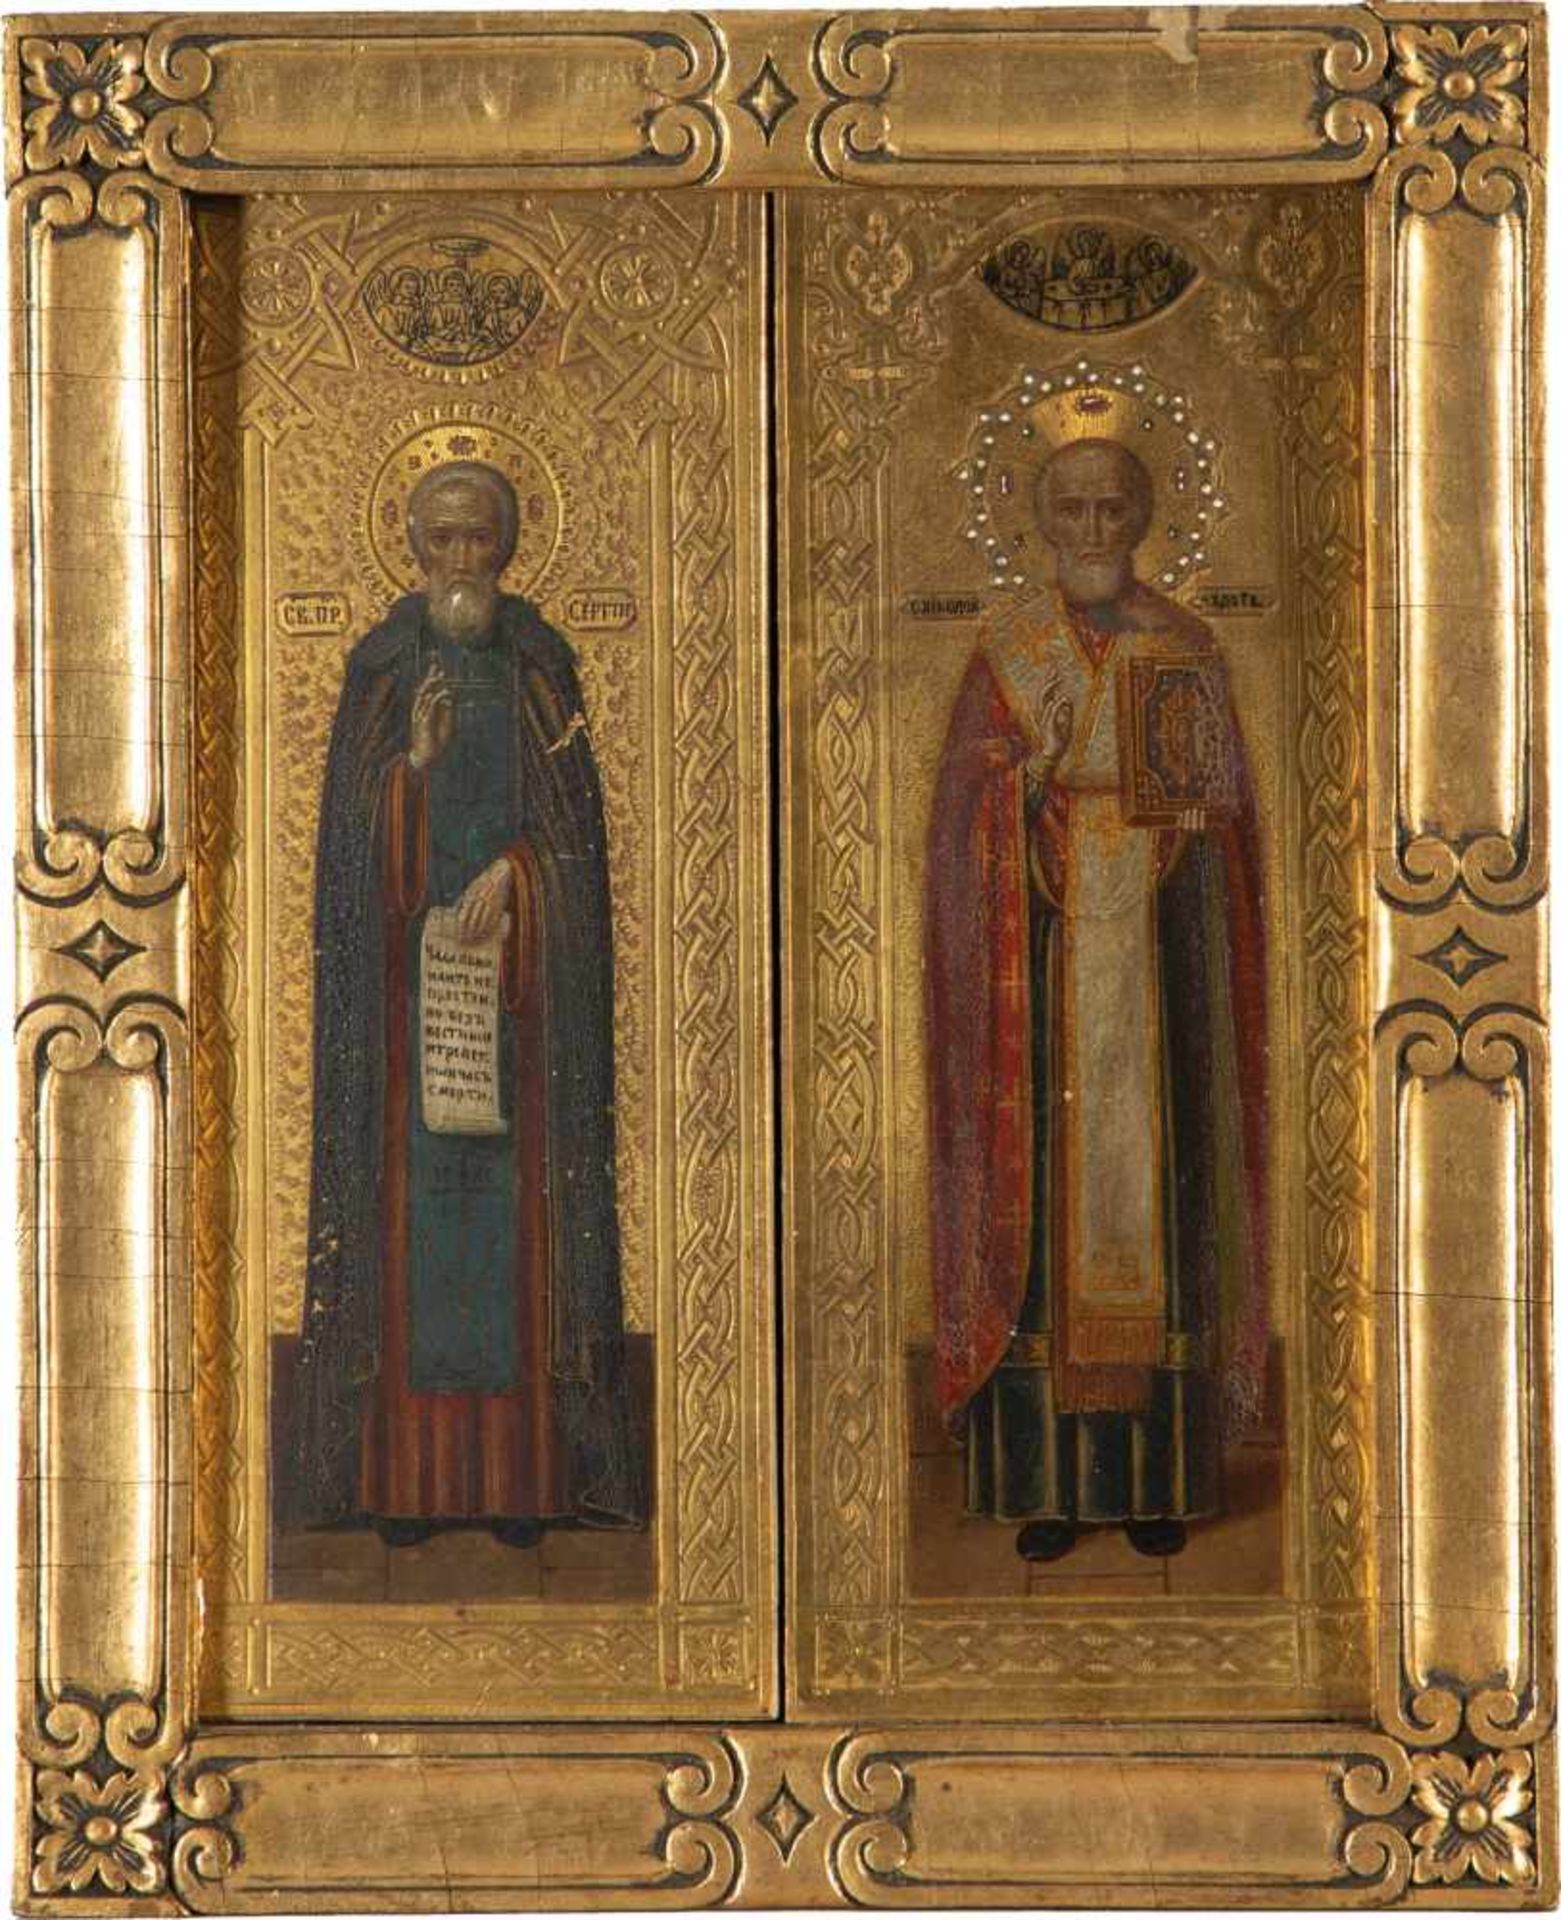 Zwei kleine Ikonen: Heiliger Sergej von Radonesch und Nikolaus von Myra